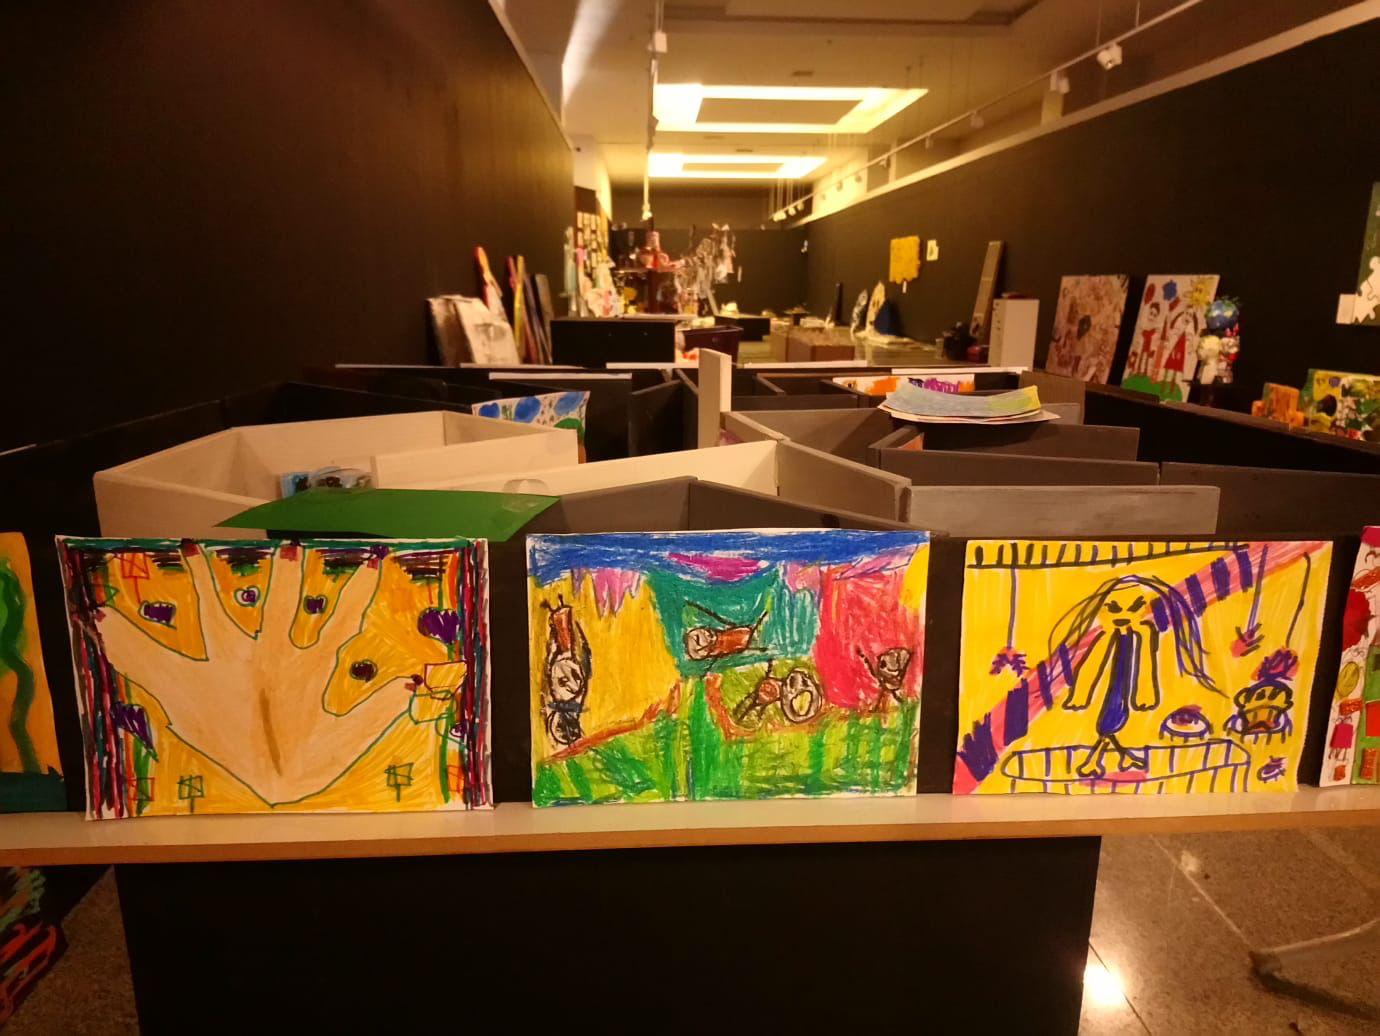 İlkokul öğrencileri tasarladı galeride sergileniyor